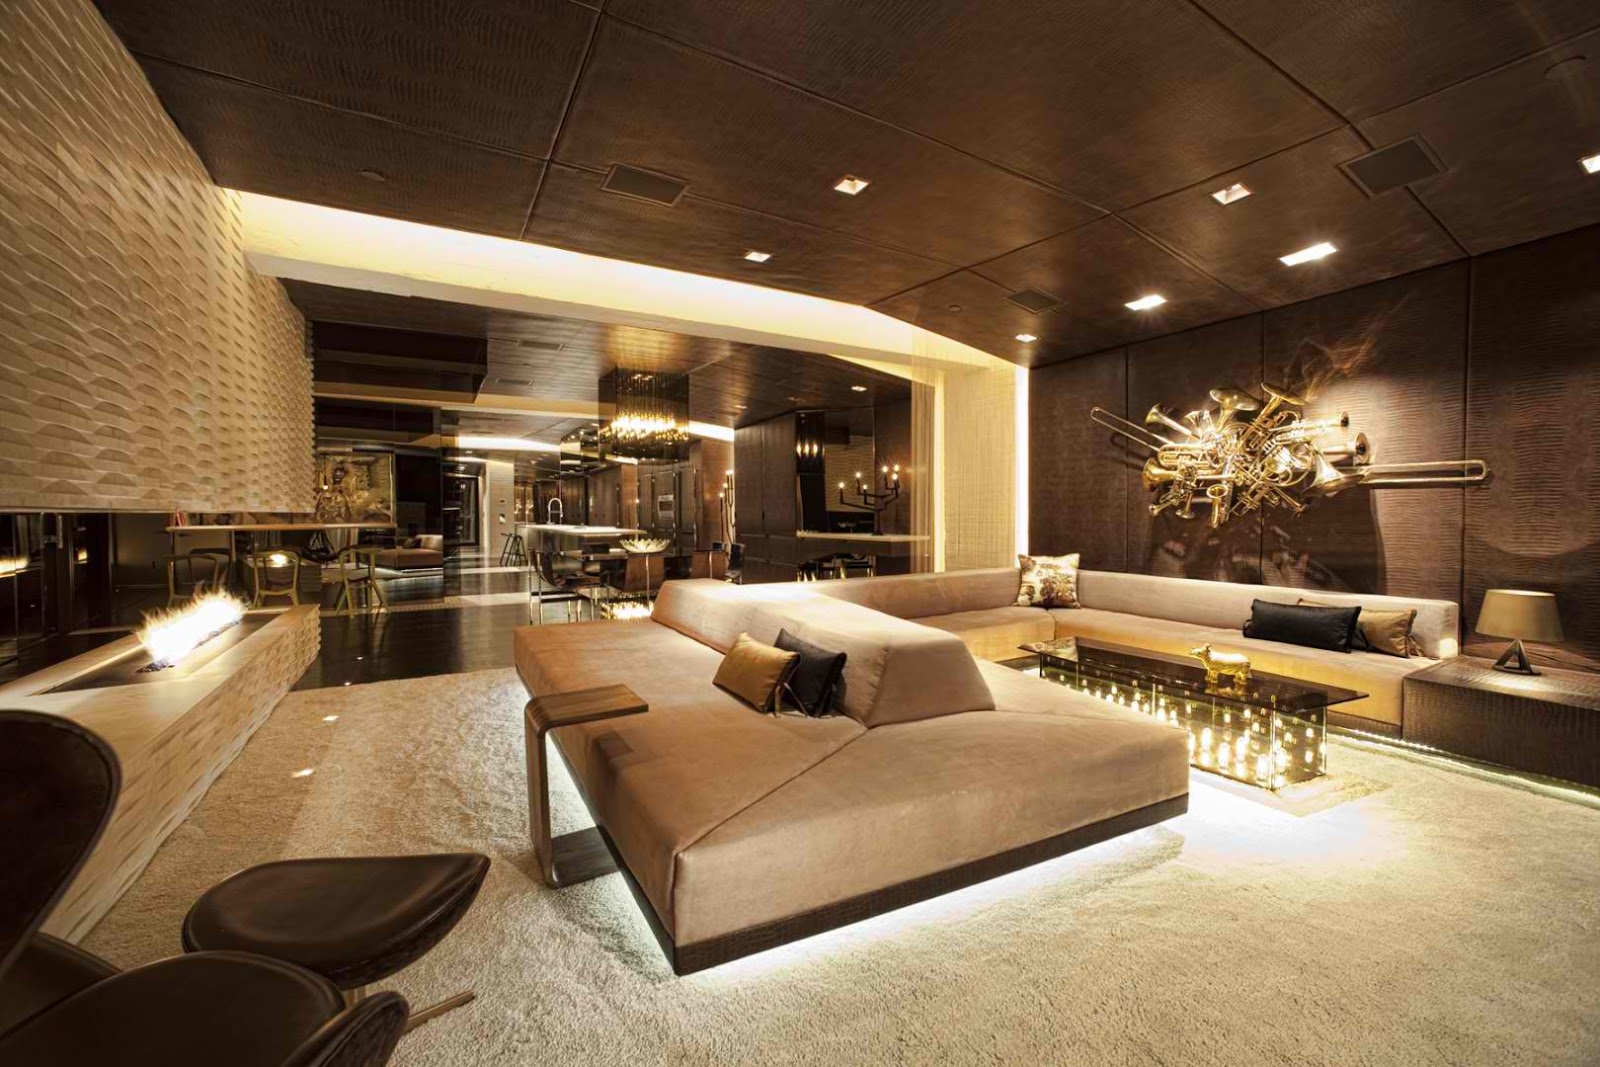 Luxury-Nodern-Interior-Design-Skylab-Architecture-1600x1067-px-